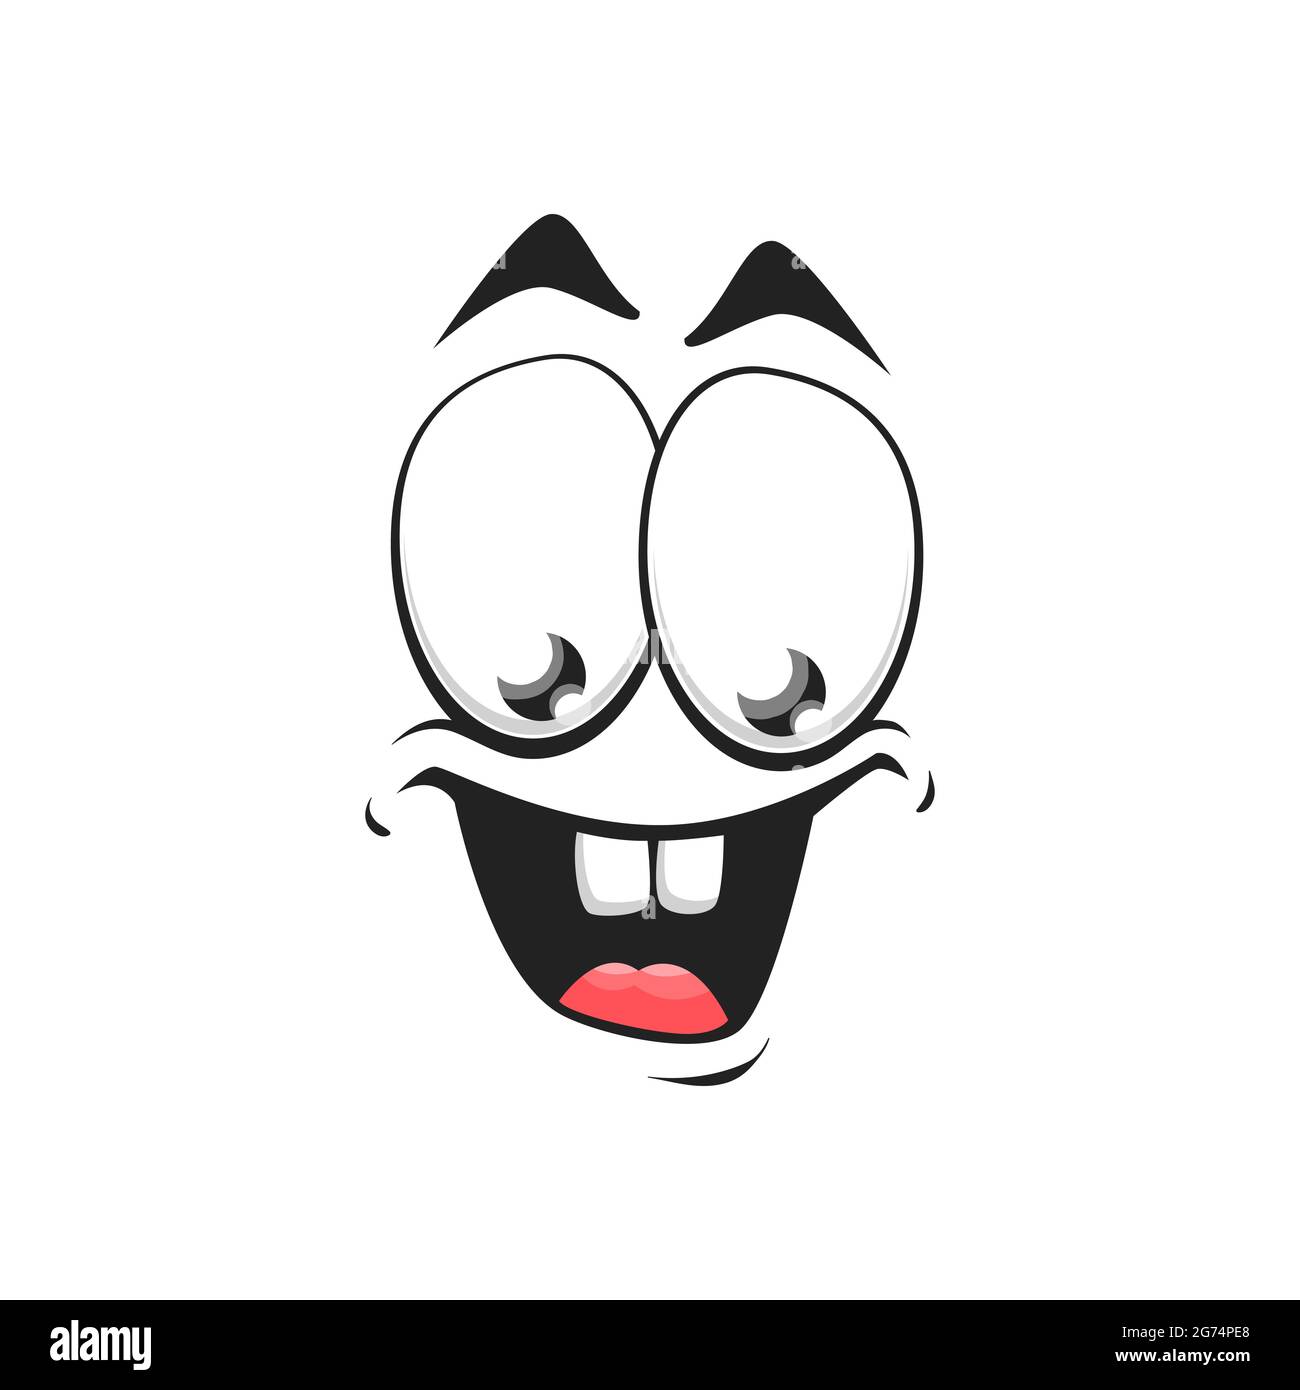 Personnage de dessin animé icône de vecteur isolé, grand sourire ravie émoji facial de créature stupide drôle, émotion heureuse, visage de bande dessinée avec la bouche souriante et Illustration de Vecteur